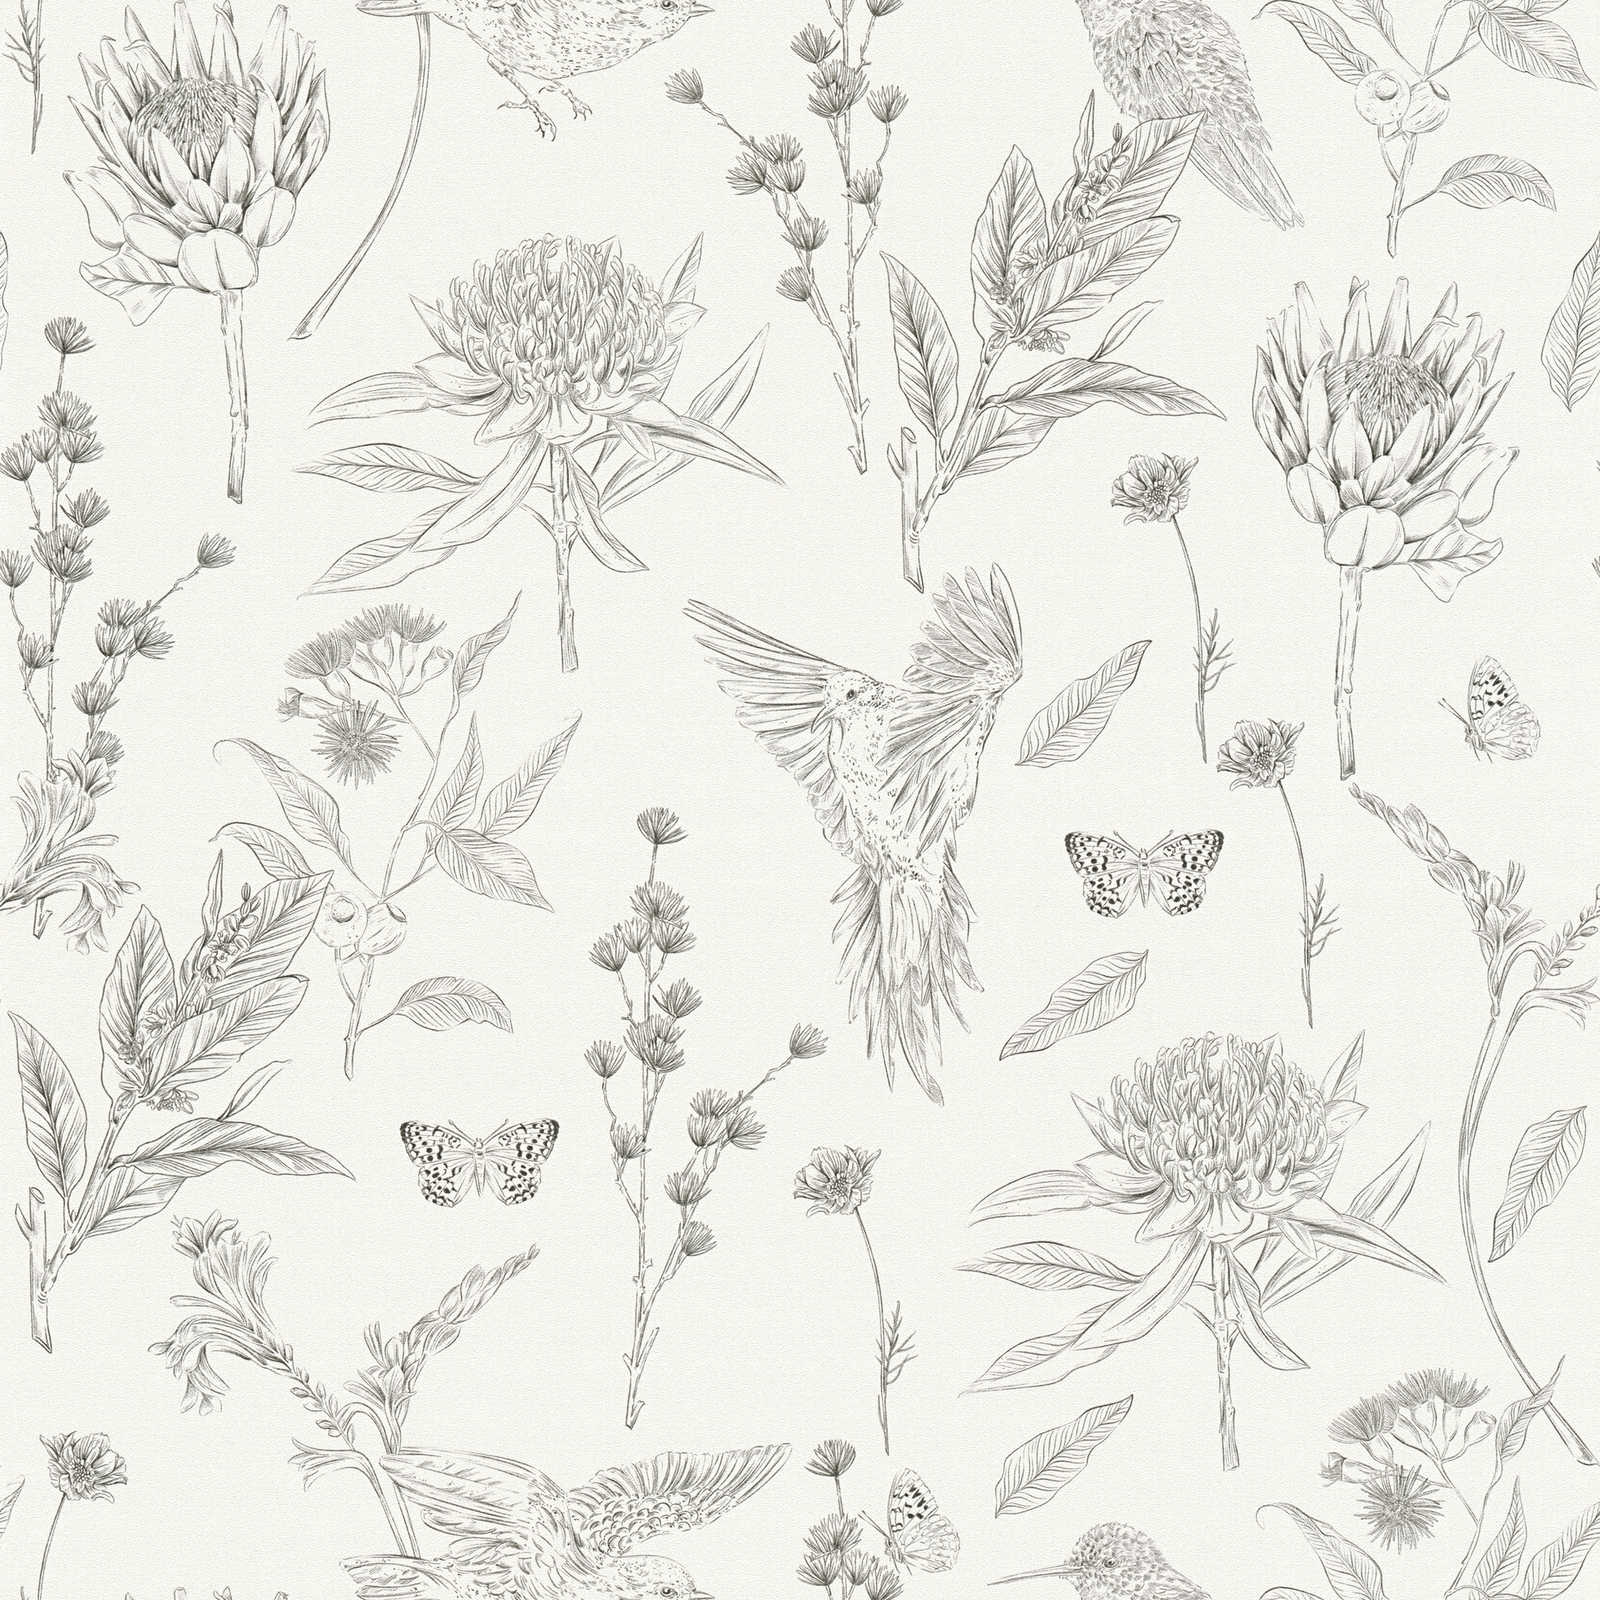 Tapete floral mit Blumen & Tieren strukturiert matt – Weiß, Schwarz
